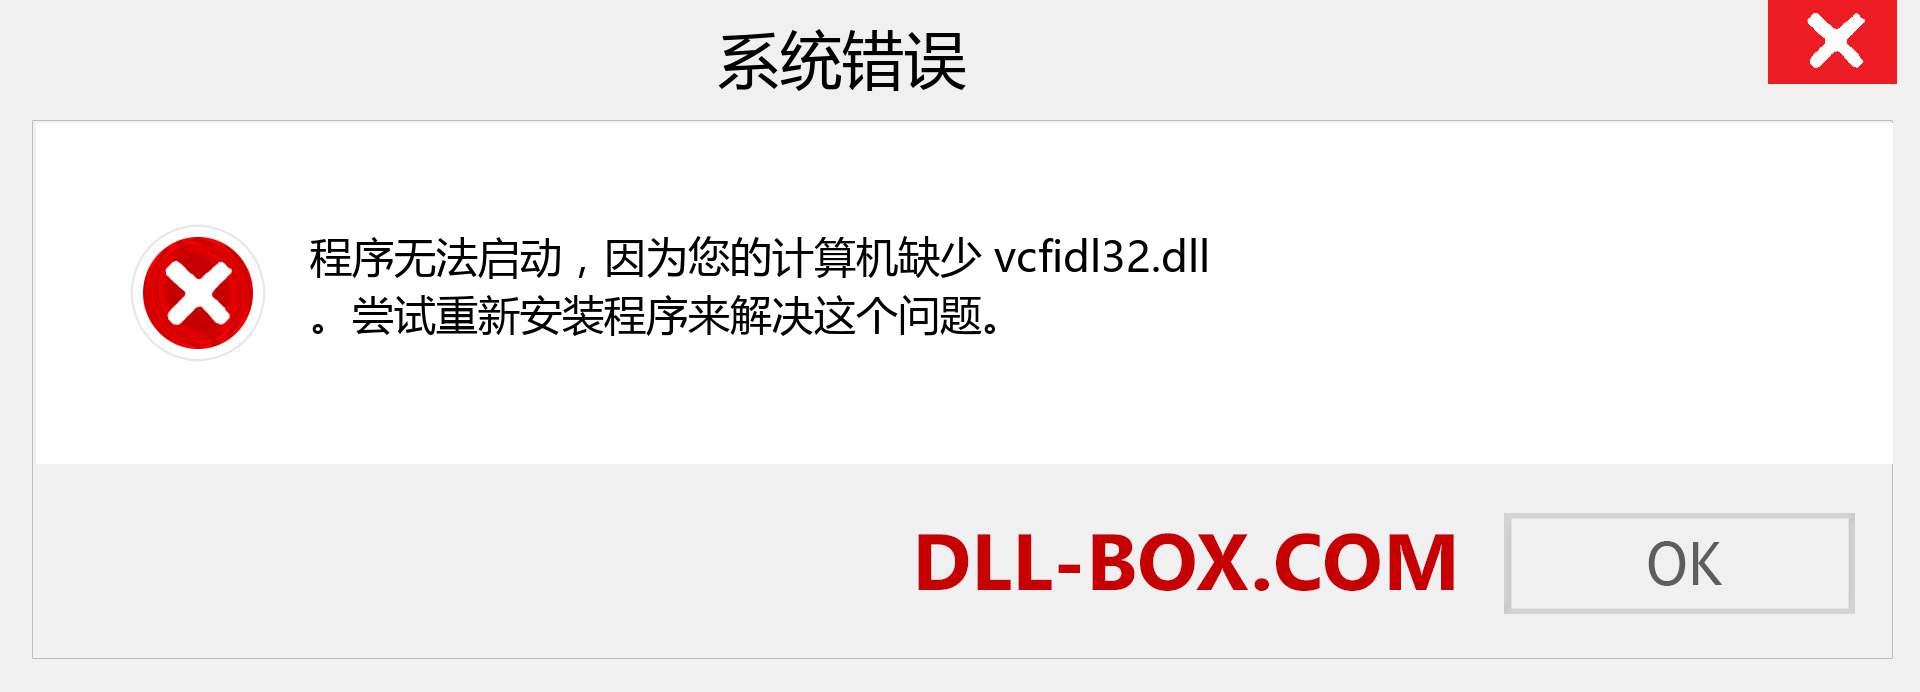 vcfidl32.dll 文件丢失？。 适用于 Windows 7、8、10 的下载 - 修复 Windows、照片、图像上的 vcfidl32 dll 丢失错误